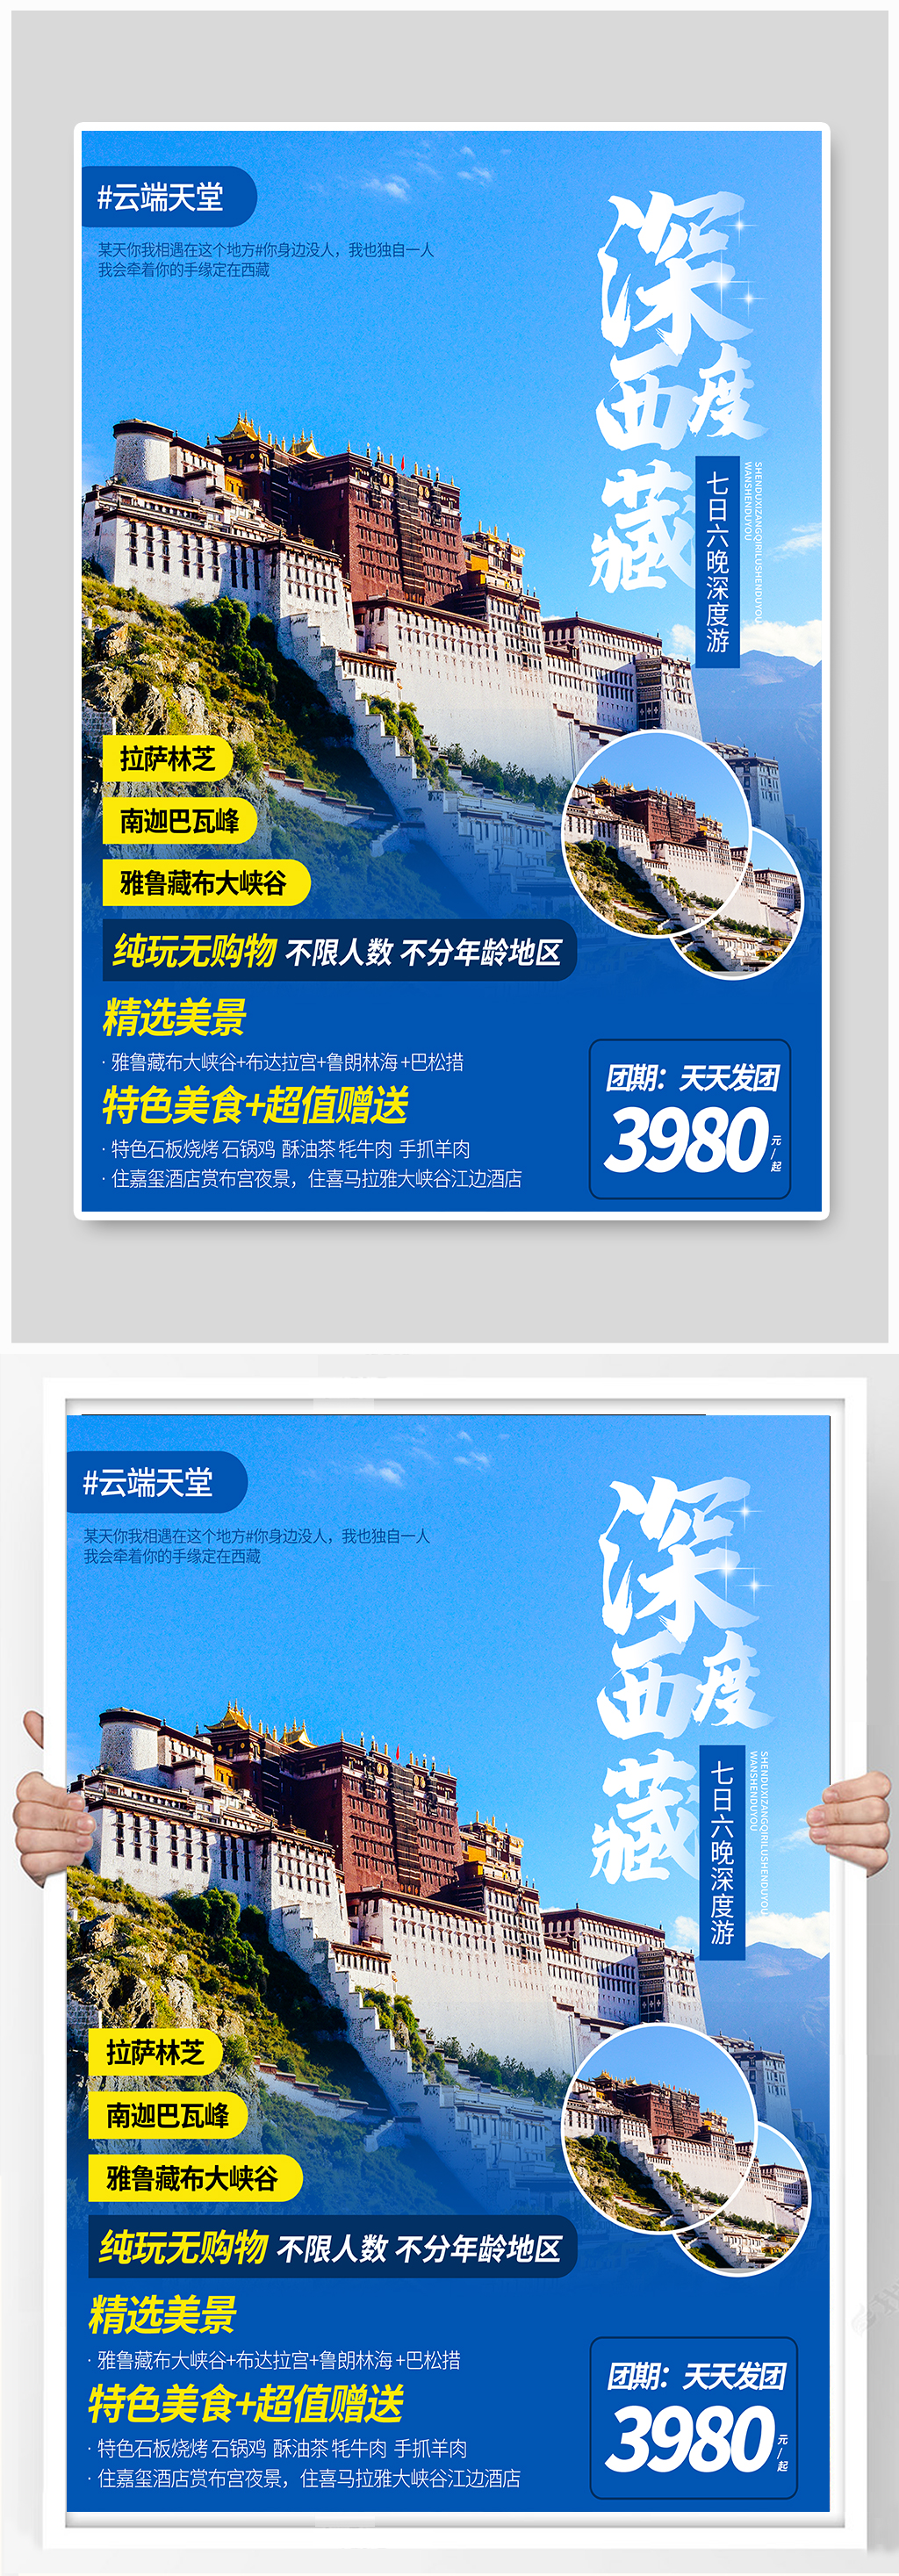 西藏旅行社旅游海报促销旅游单页素材